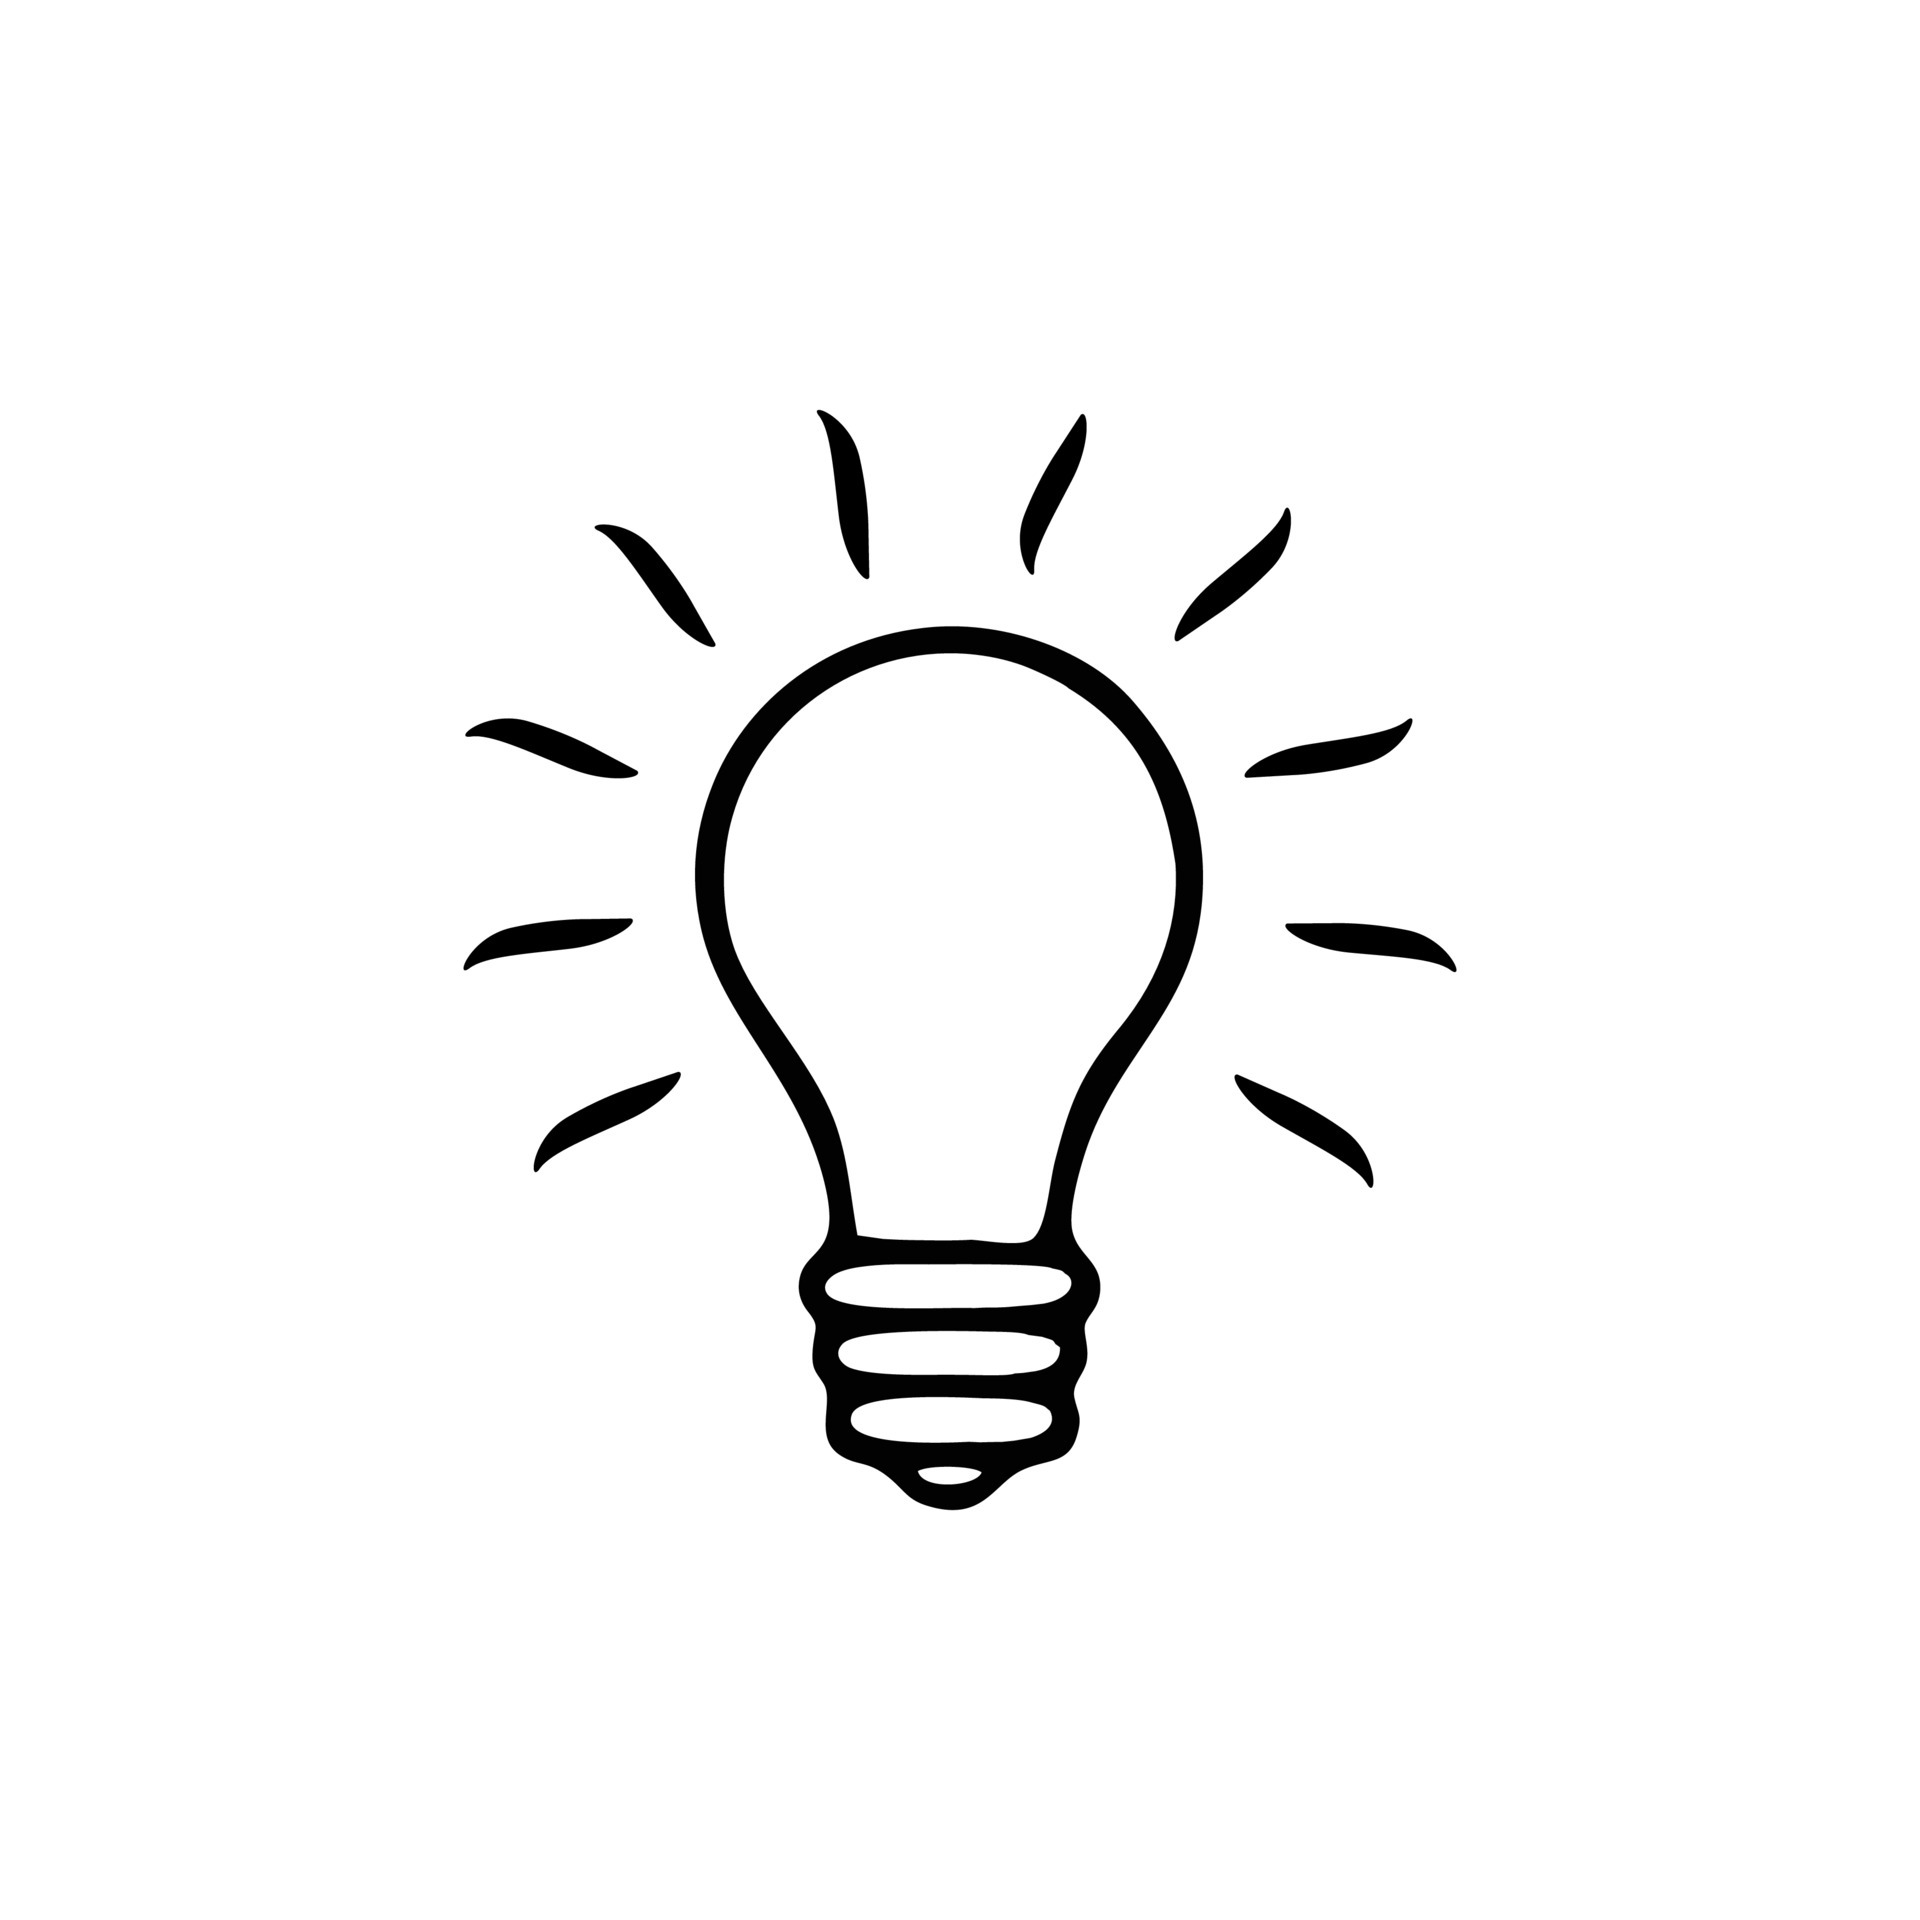 Vejhus symmetri Slip sko Light bulb icon isolated on white background. Light bulb icon vector design  illustration. Light bulb icon simple sign. Light bulb symbol for logo, web,  app, template, 6408292 Vector Art at Vecteezy